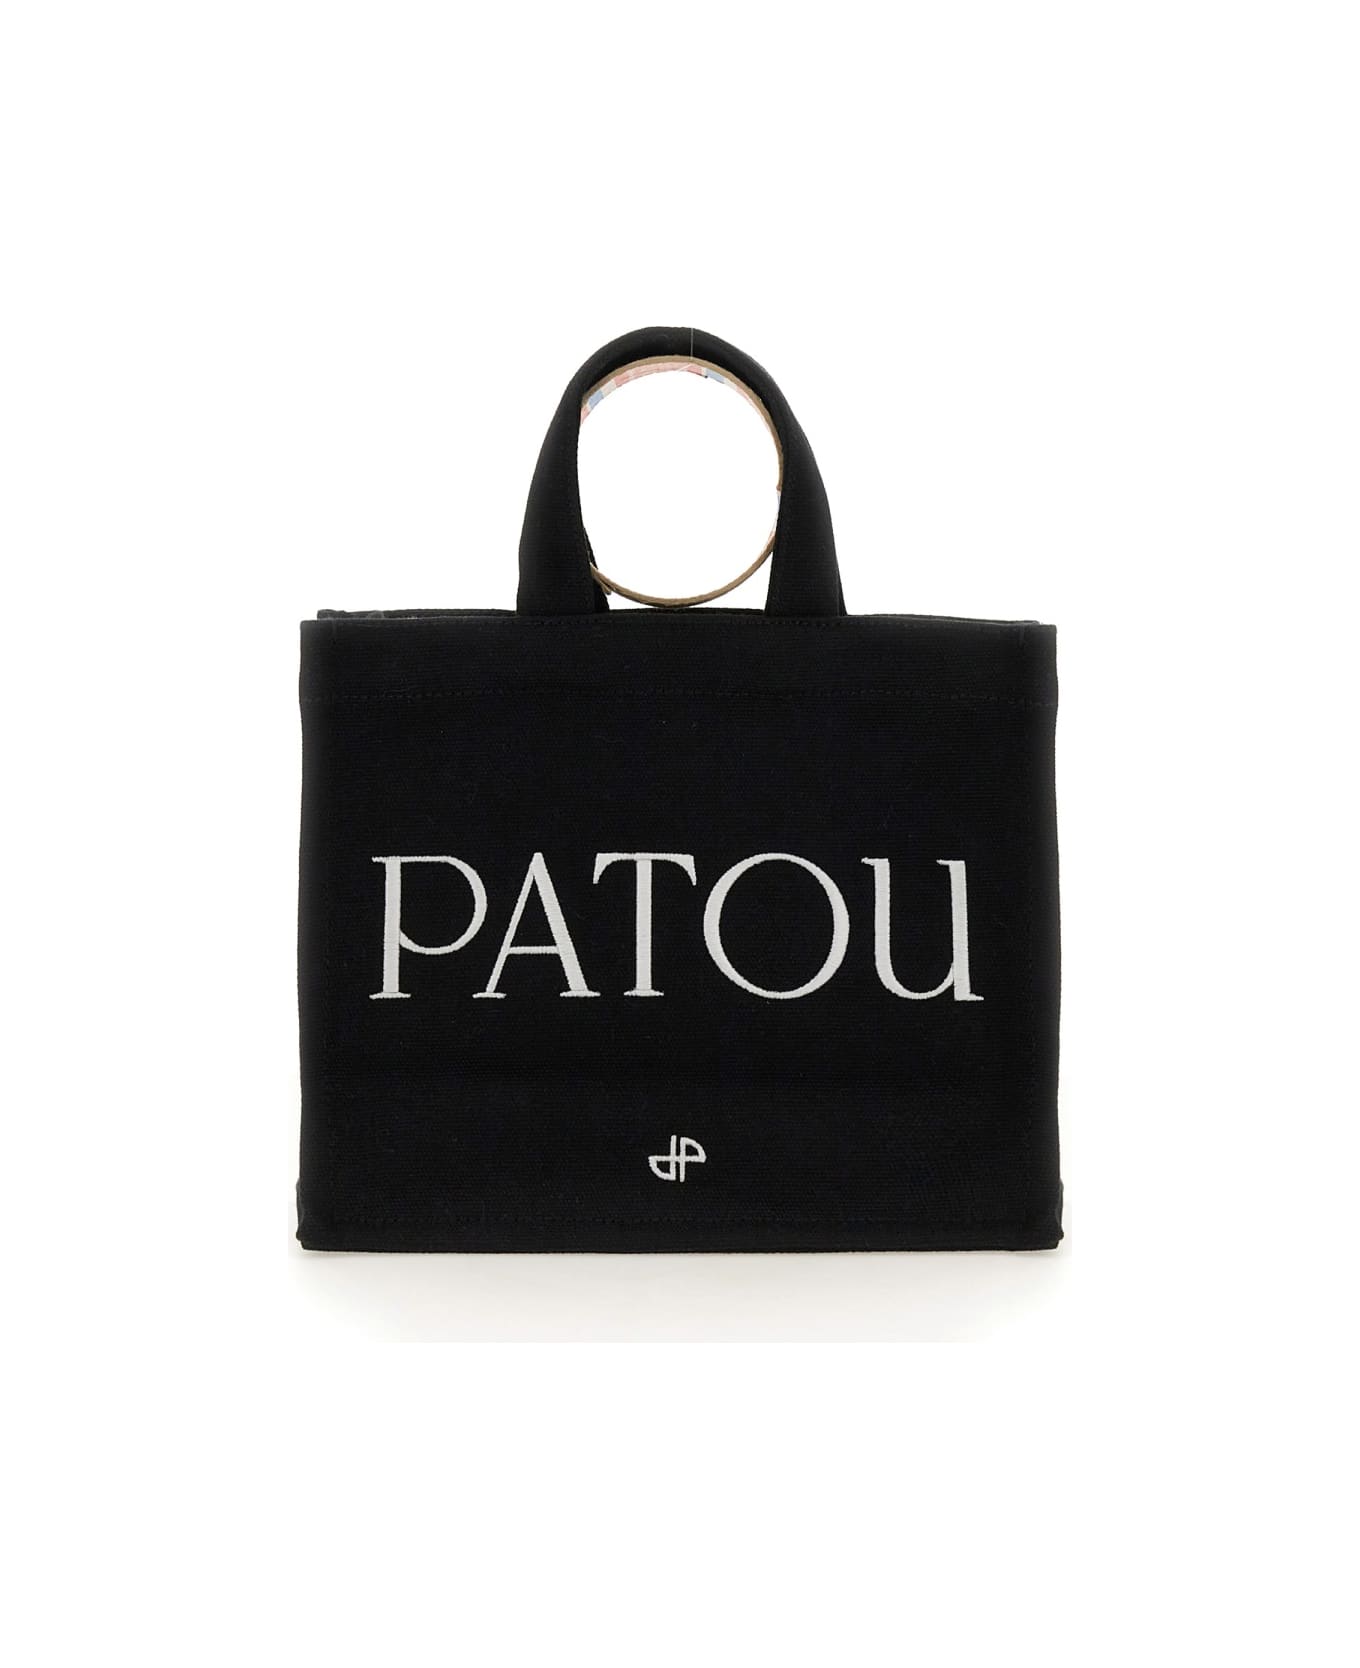 Patou Small 'patou' Tote Bag - Black トートバッグ